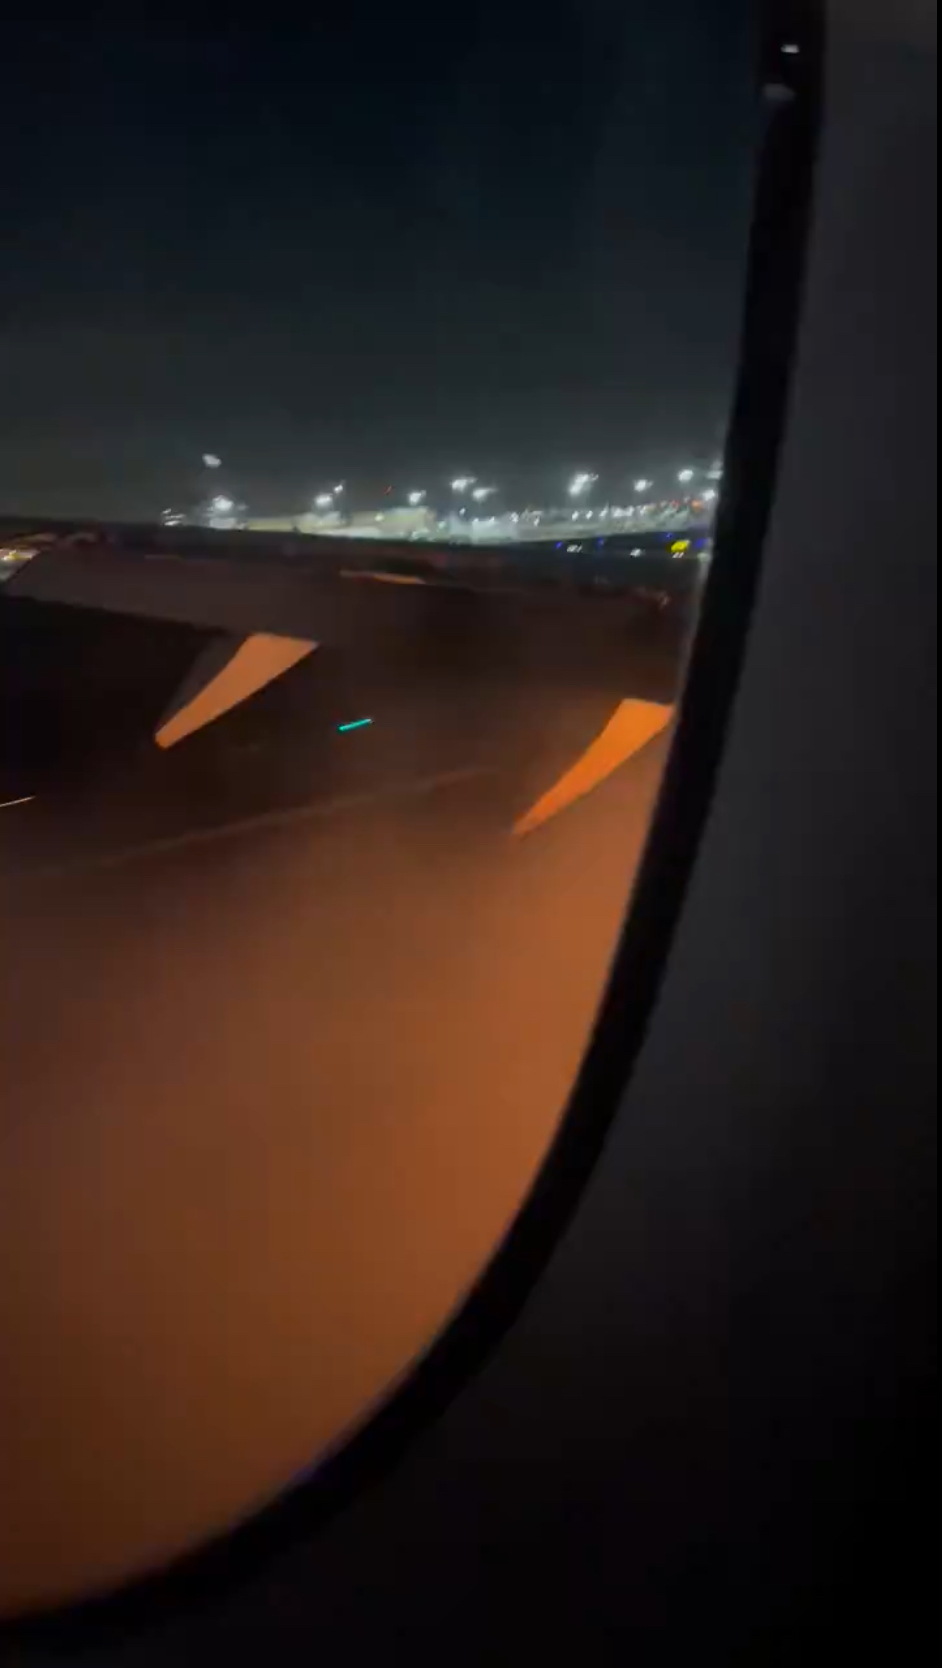 从机内看到机翼下传出火光。 X